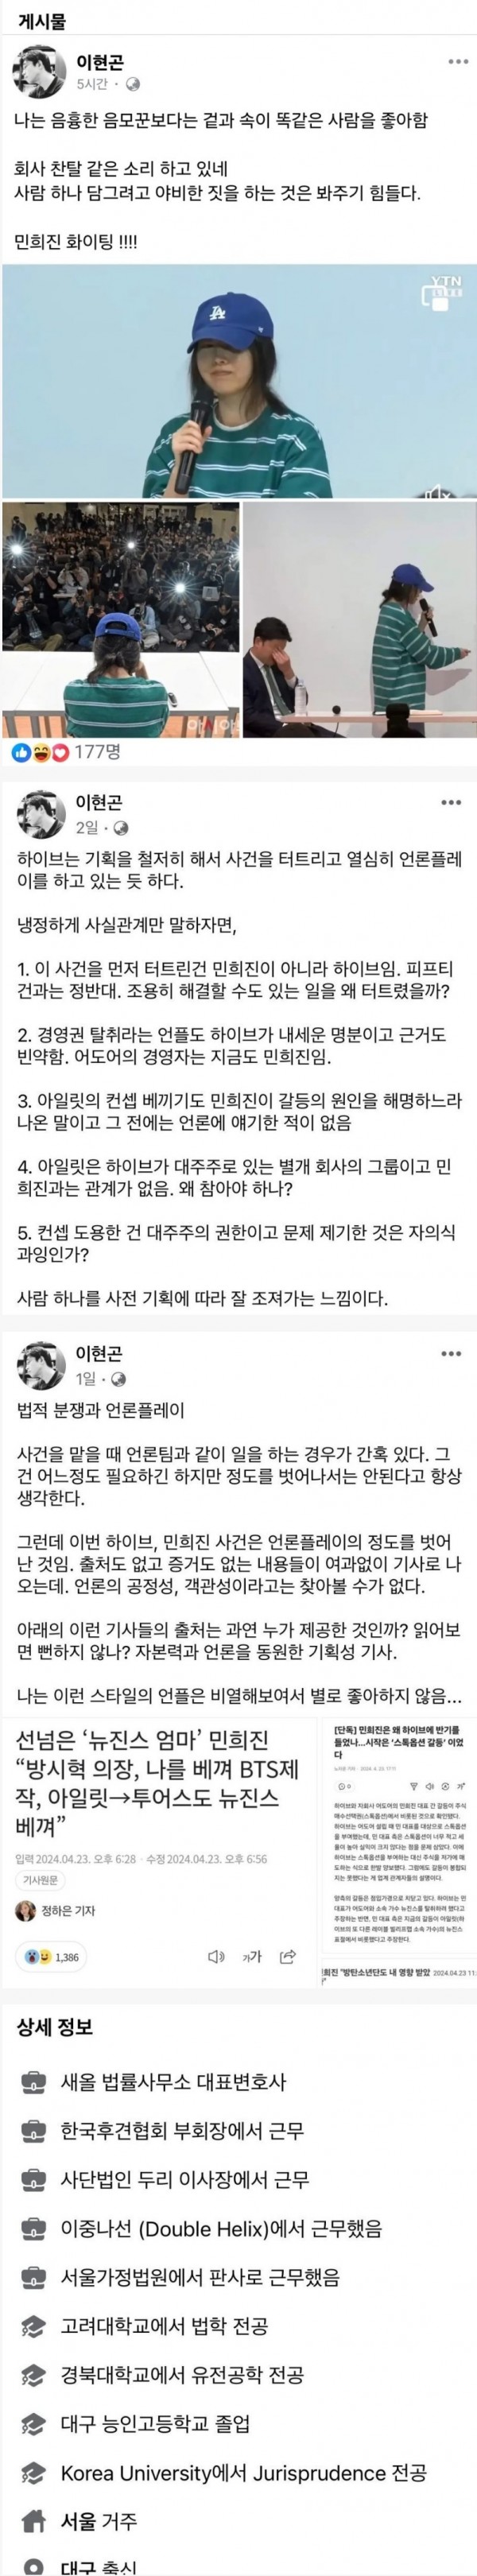 민희진 옹호하던 변호사 최근자 페북